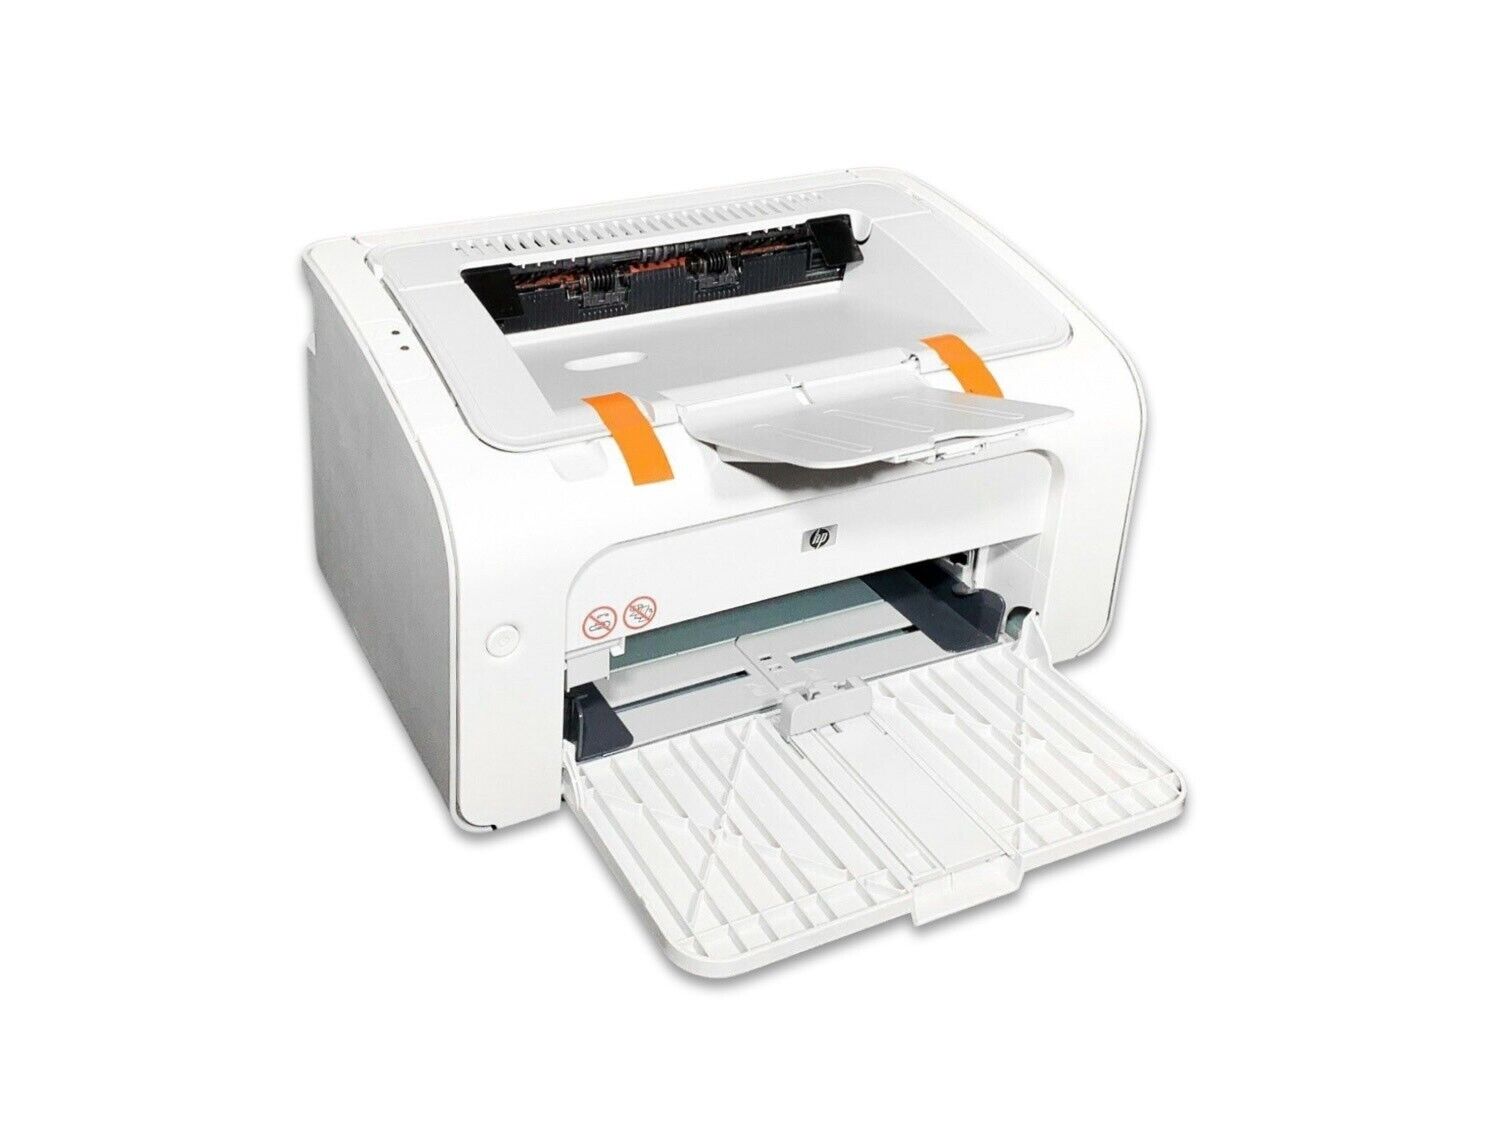 HP LaserJet P1005 Workgroup Monochrome Laser Printer CB410A